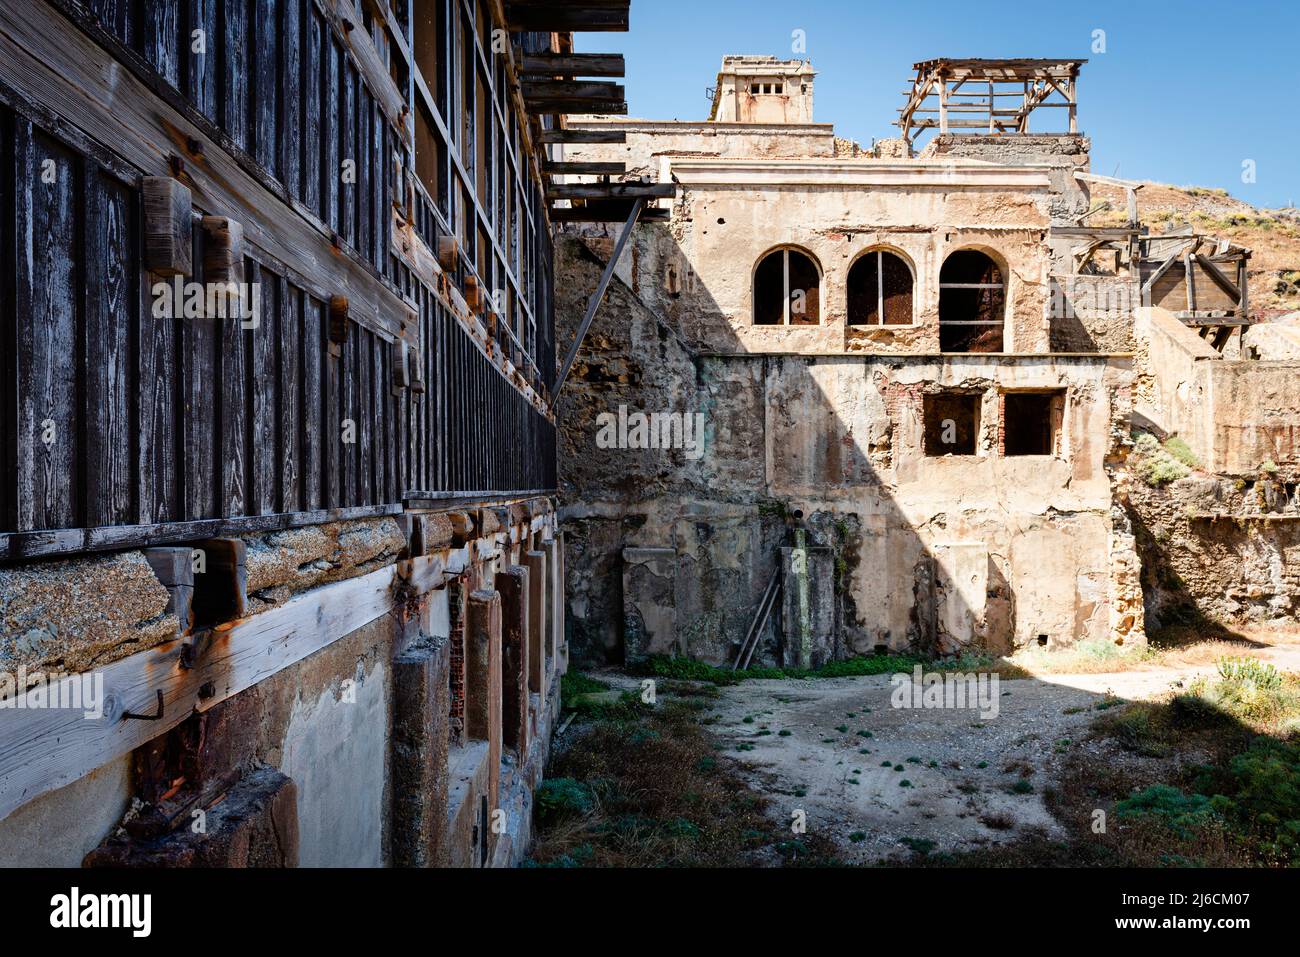 Ruines industrielles - bâtiments délabrés de l'ancienne colonie minière Argentiera sur la côte ouest de Nurra, Sassari, Sardaigne, Italie Banque D'Images